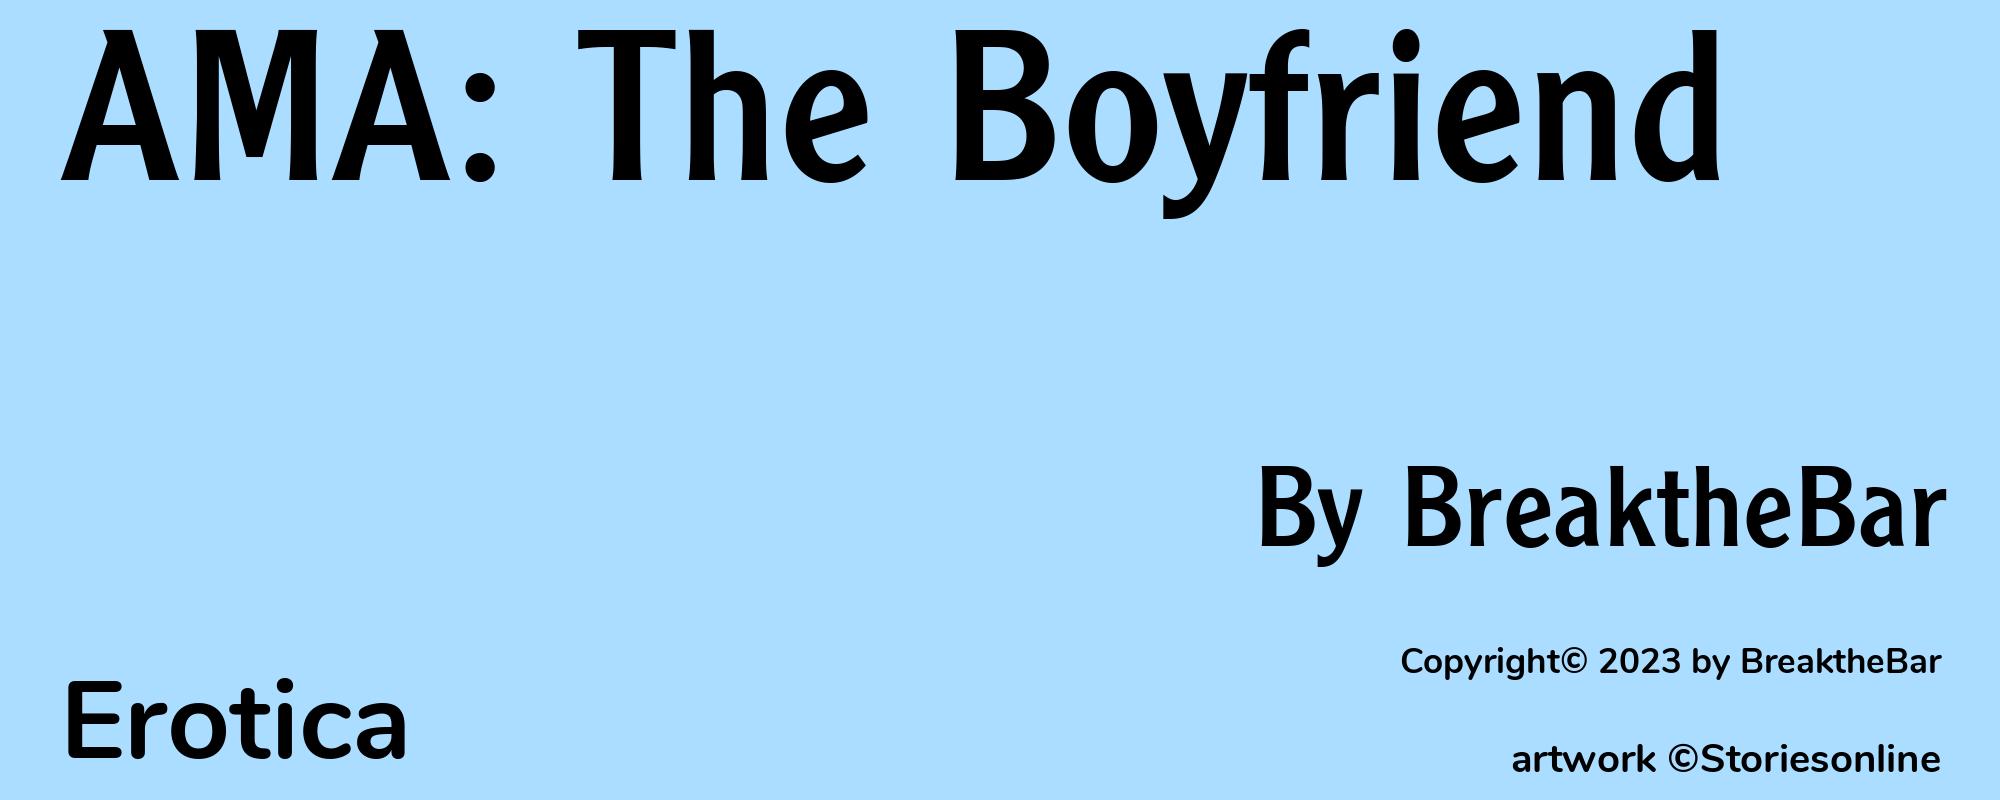 AMA: The Boyfriend - Cover